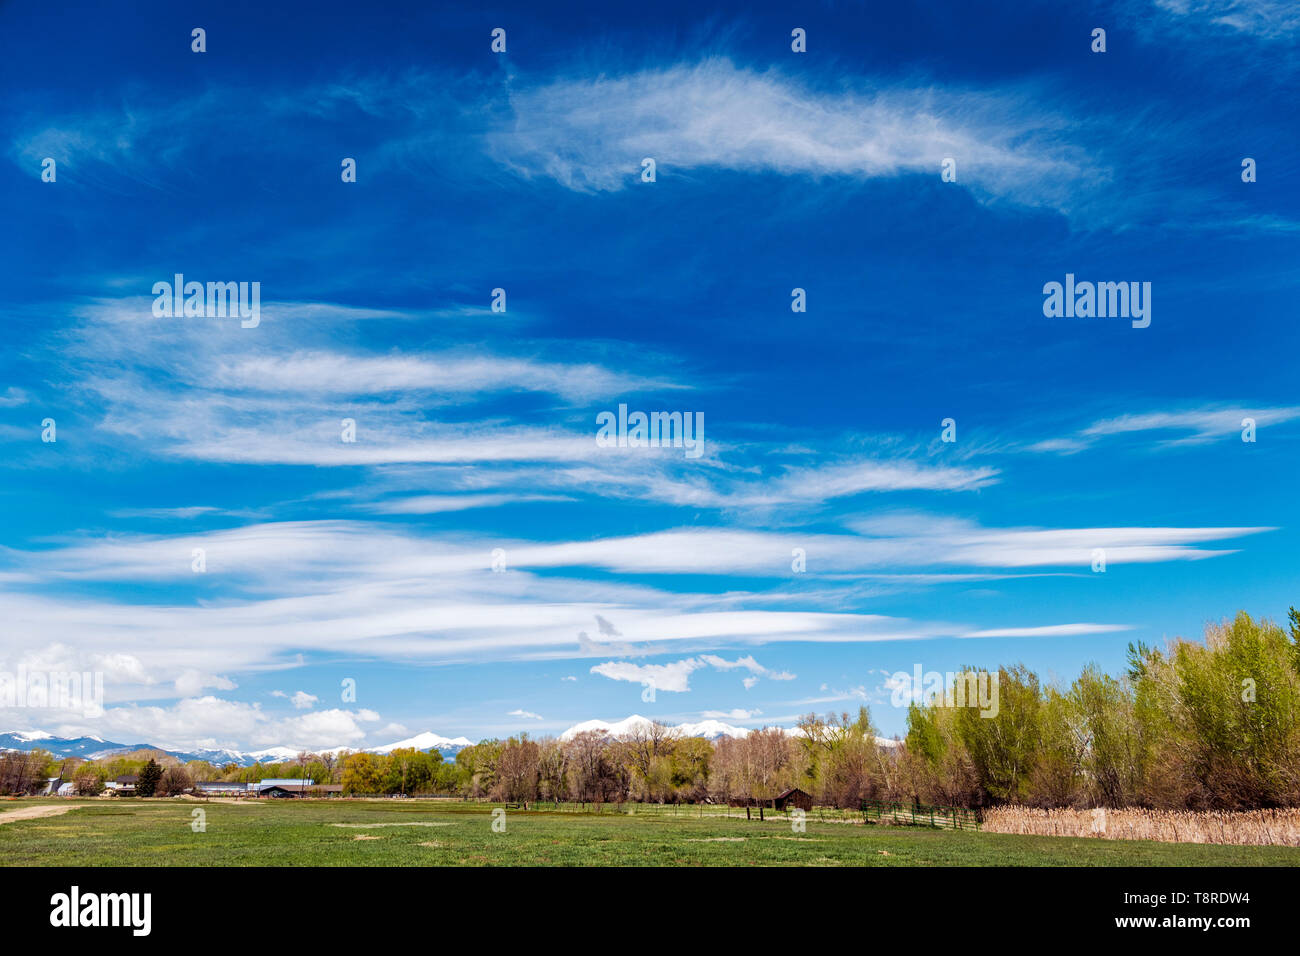 Beau ciel bleu avec des nuages cirrus ; enneigés des montagnes Rocheuses à l'horizon ; Vandaveer Ranch ; Salida, Colorado, USA Banque D'Images